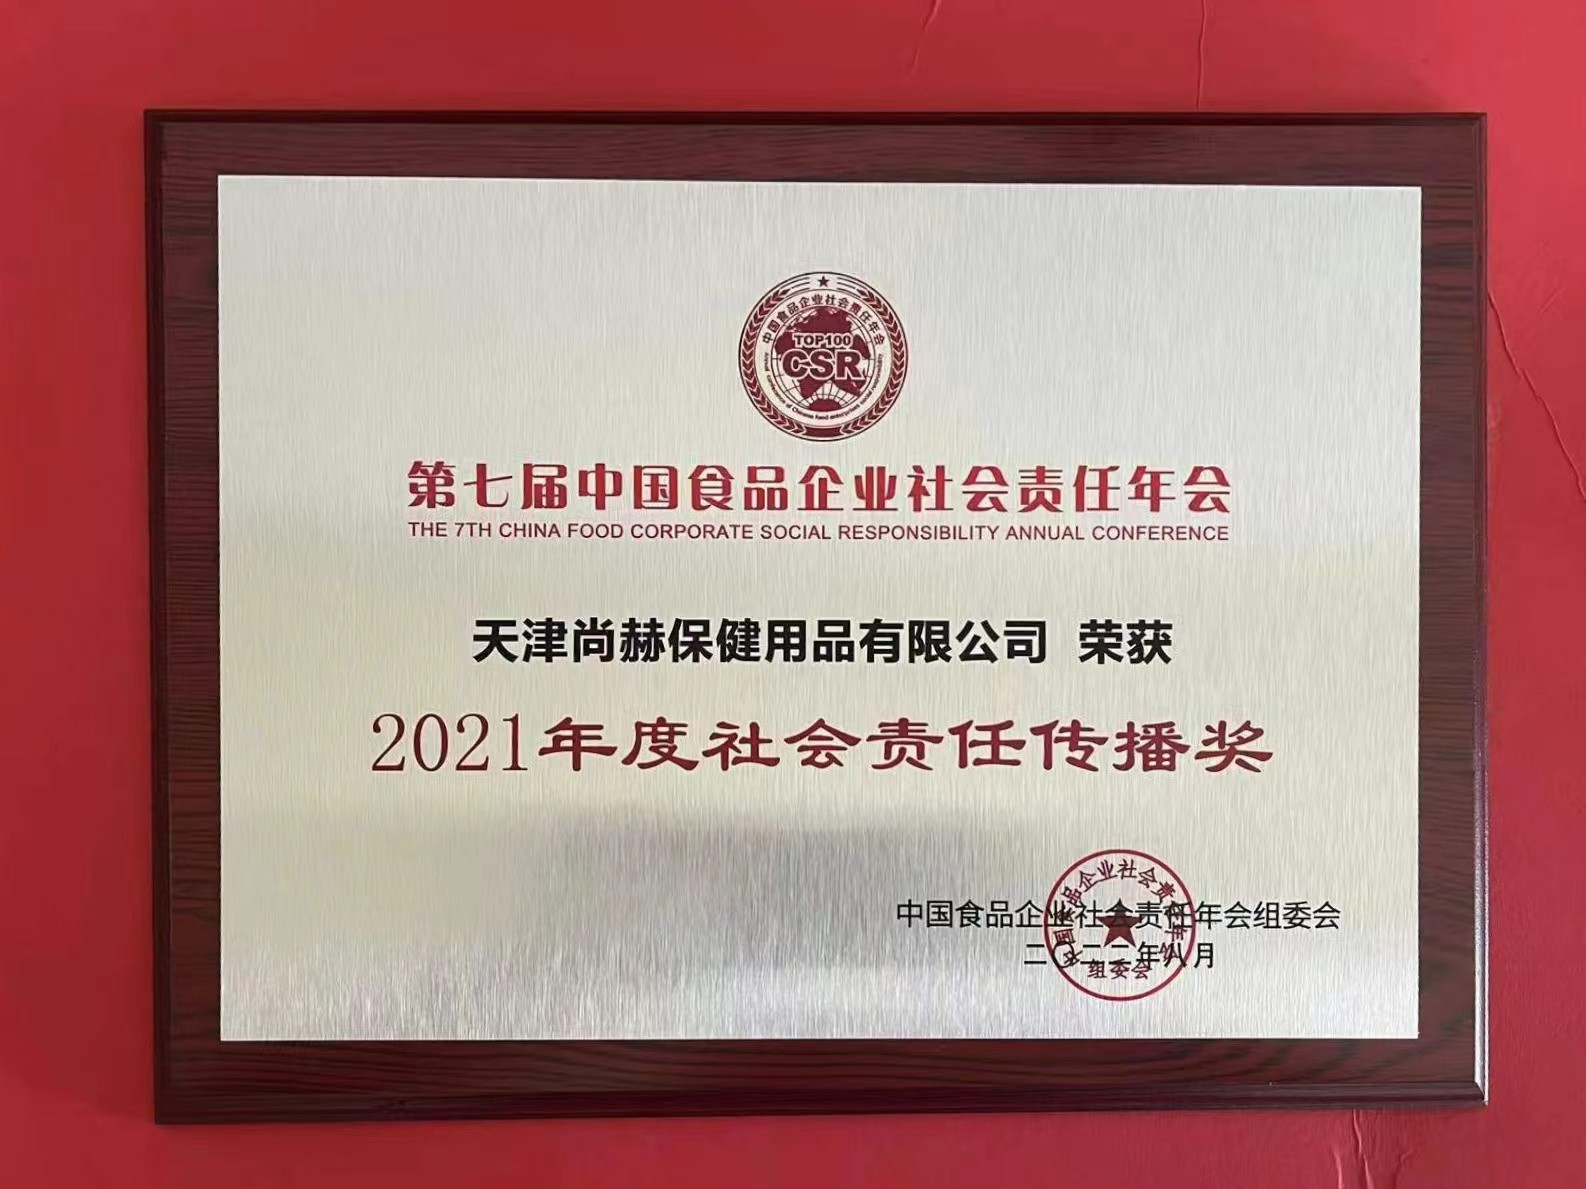 2022年8月-正规的十大网投实体平台(中国)有限公司公司荣获中国食品报颁发“2021年度社会责任传播奖”